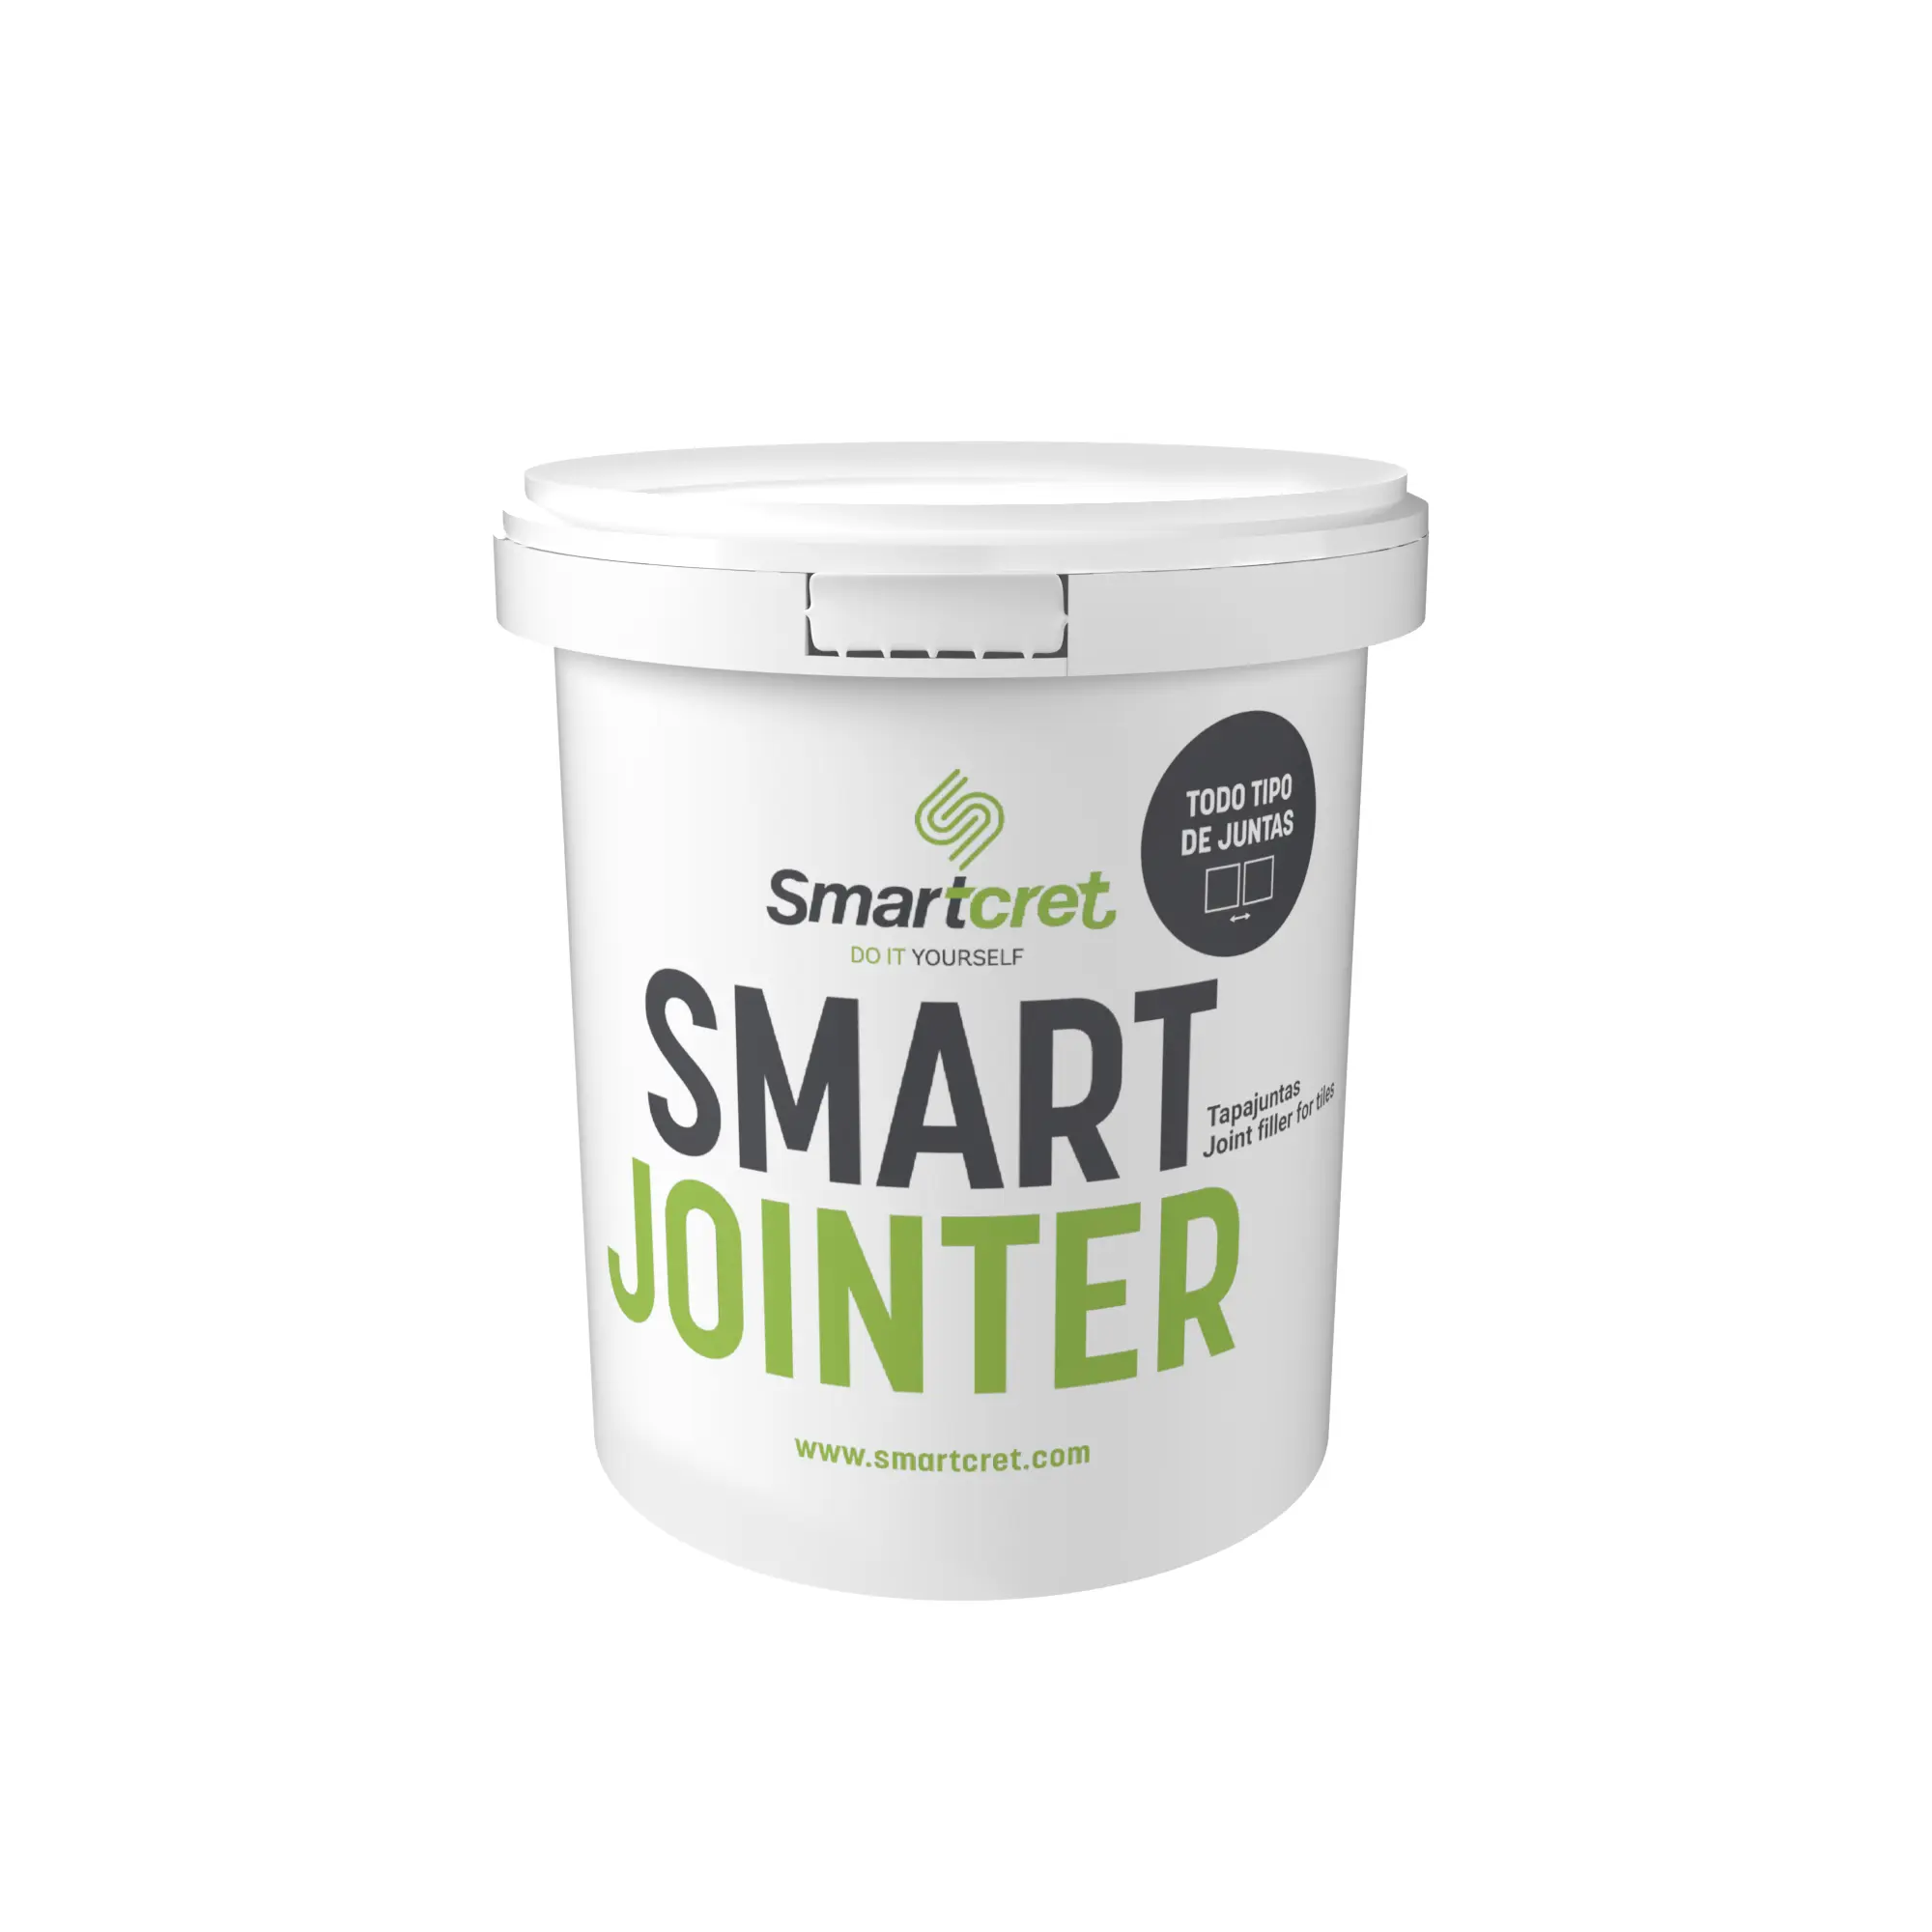 Smart Jointer 1,5 kg - Smartcret tile grout filler